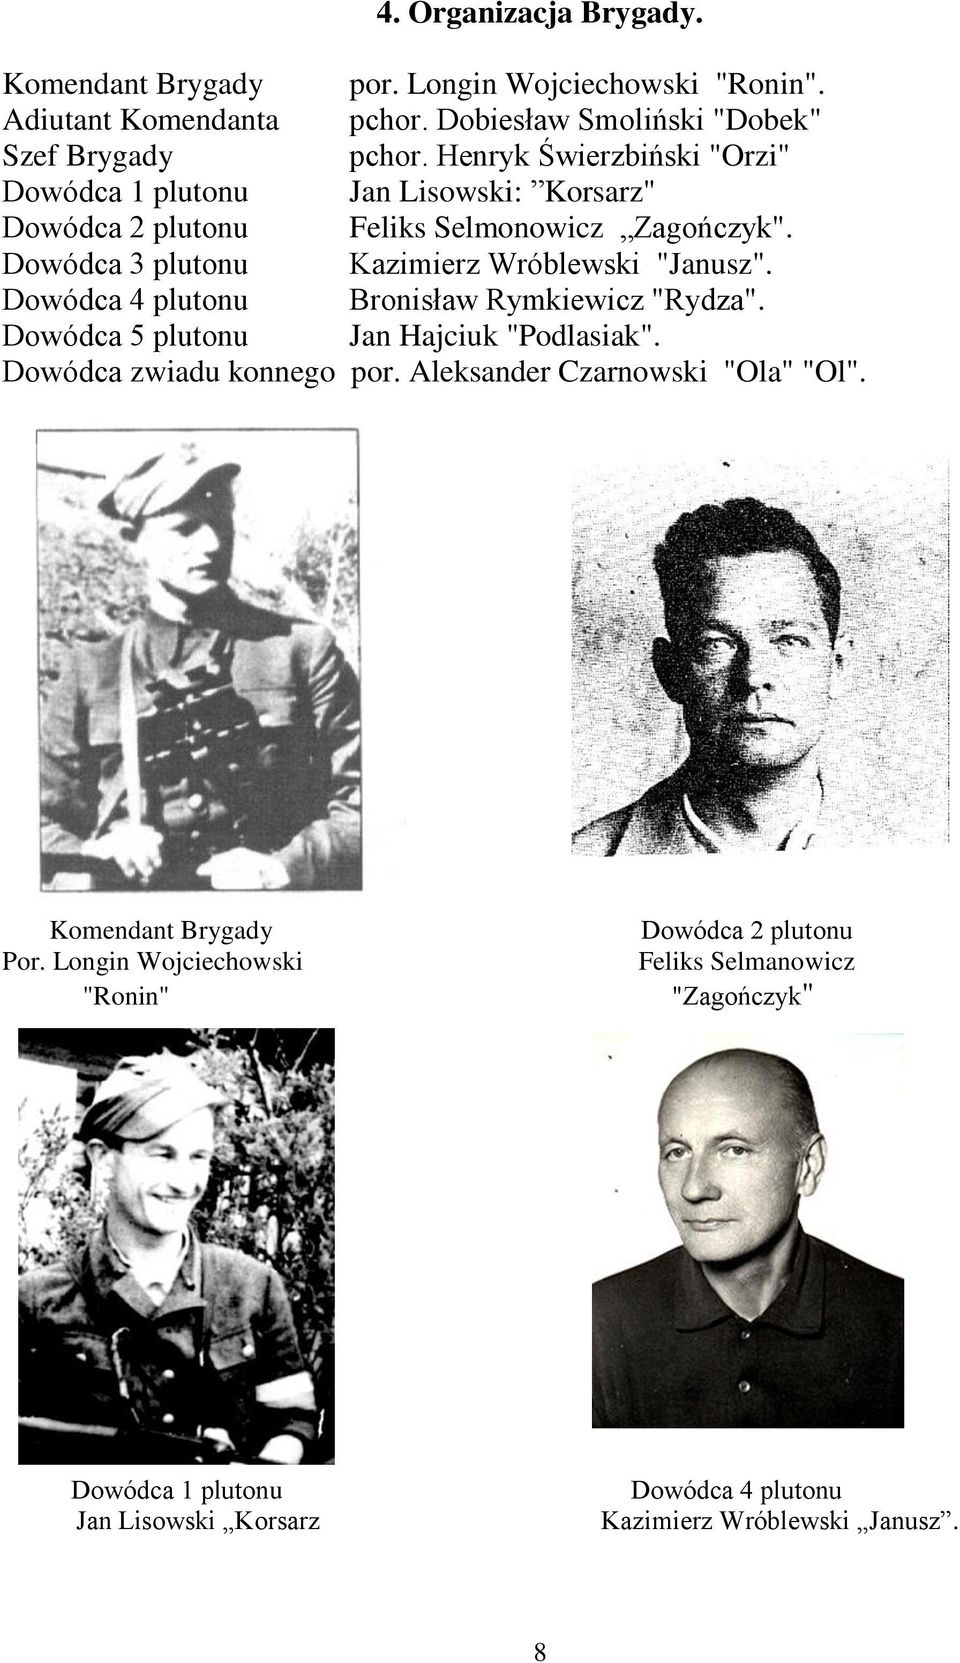 Dowódca 4 plutonu Bronisław Rymkiewicz "Rydza". Dowódca 5 plutonu Jan Hajciuk "Podlasiak". Dowódca zwiadu konnego por. Aleksander Czarnowski "Ola" "Ol".